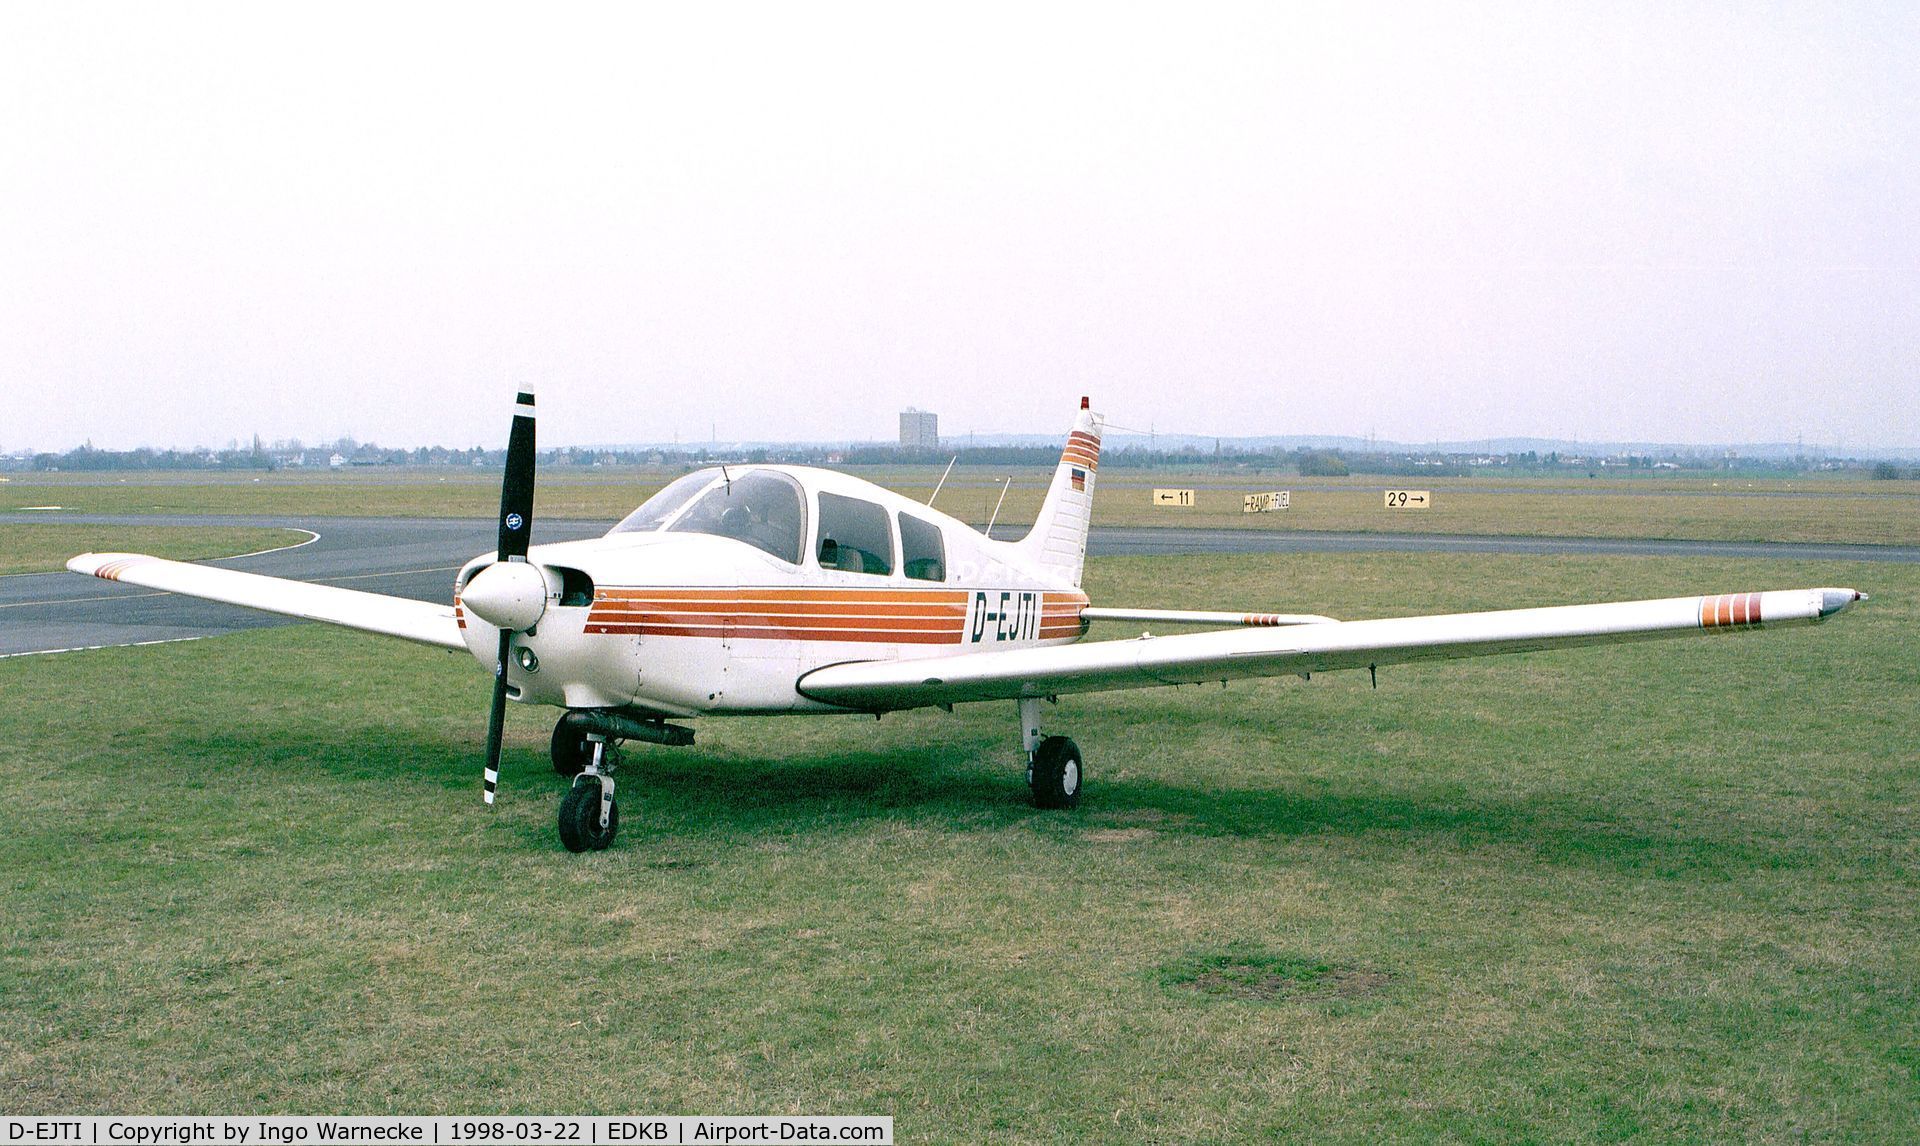 D-EJTI, Piper PA-28-161 C/N 2841308, Piper PA-28-161 Cadet at Bonn-Hangelar airfield